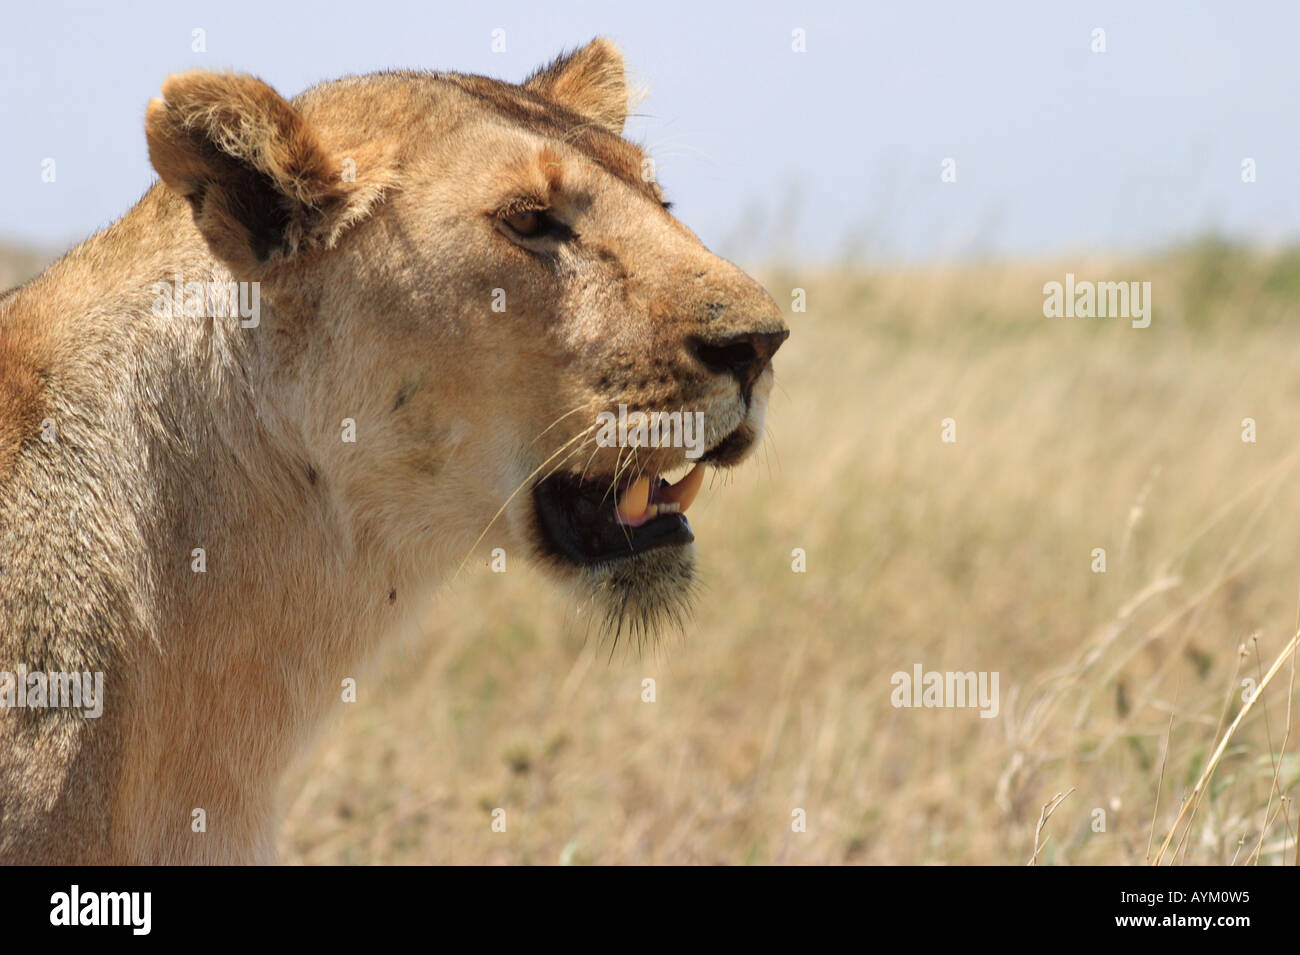 Eine Löwin jagt nach Beute während der Trockenzeit auf den Ebenen der nördliche Serengeti, Tansania, Ostafrika. Stockfoto